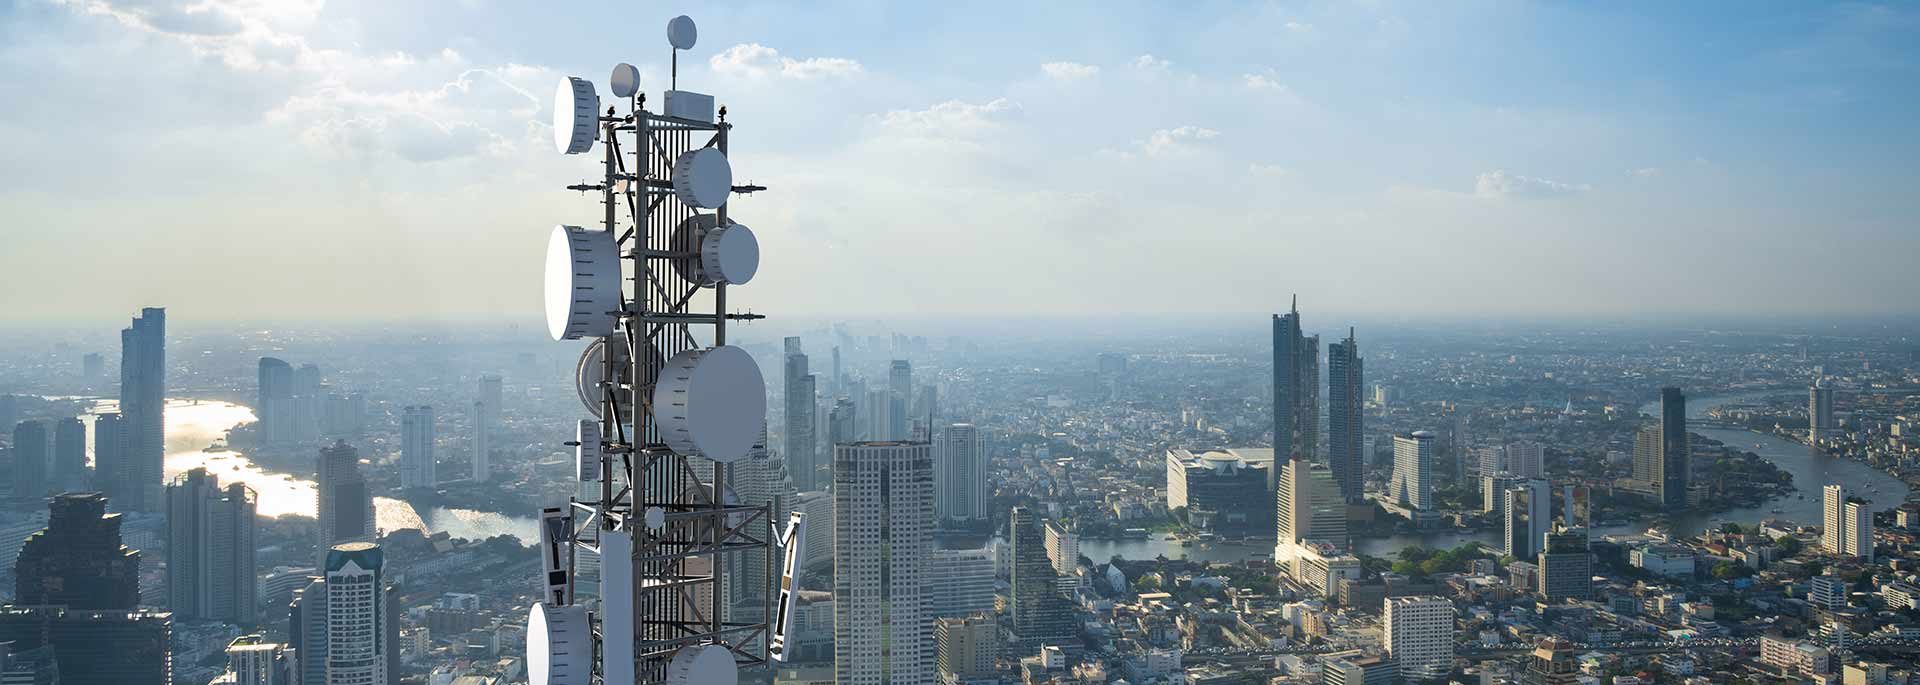 Telekommunikation mit 5G Netz